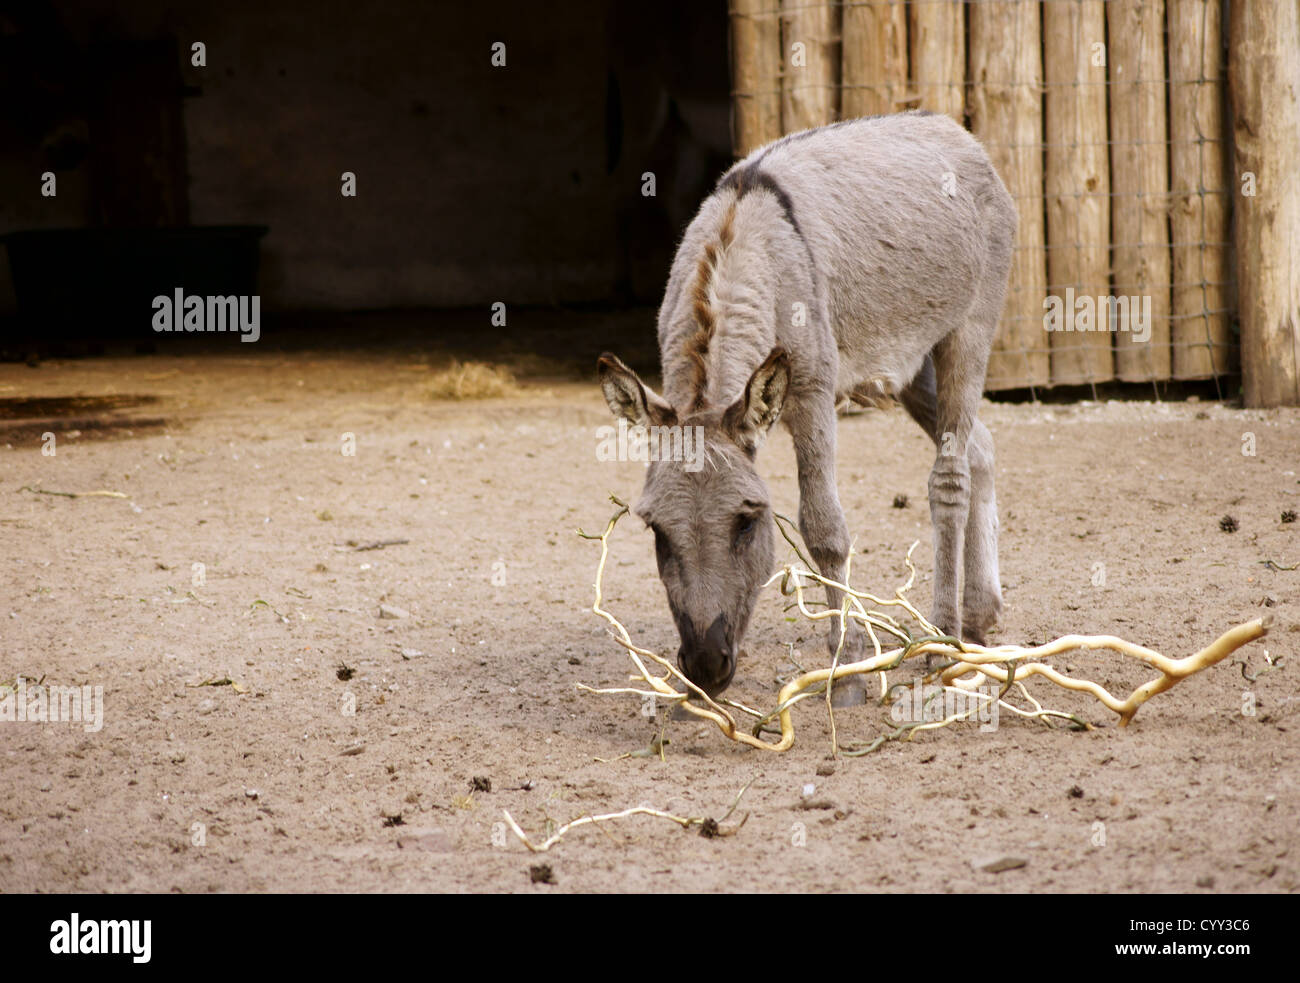 The donkey Stock Photo